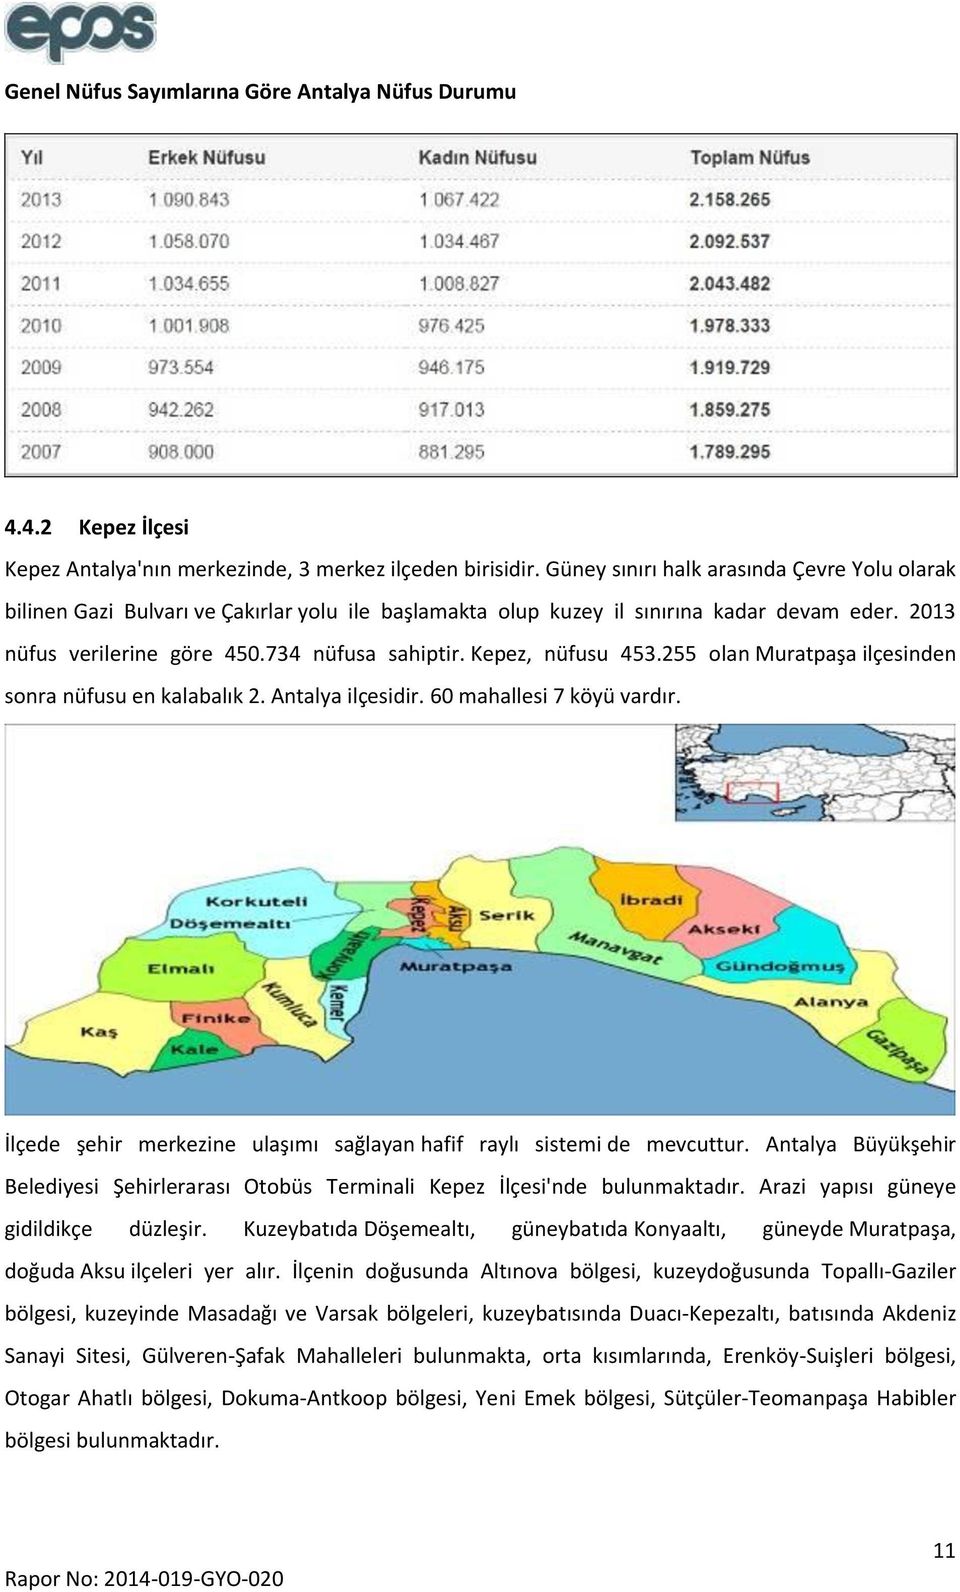 Kepez, nüfusu 453.255 olan Muratpaşa ilçesinden sonra nüfusu en kalabalık 2. Antalya ilçesidir. 60 mahallesi 7 köyü vardır. İlçede şehir merkezine ulaşımı sağlayan hafif raylı sistemi de mevcuttur.